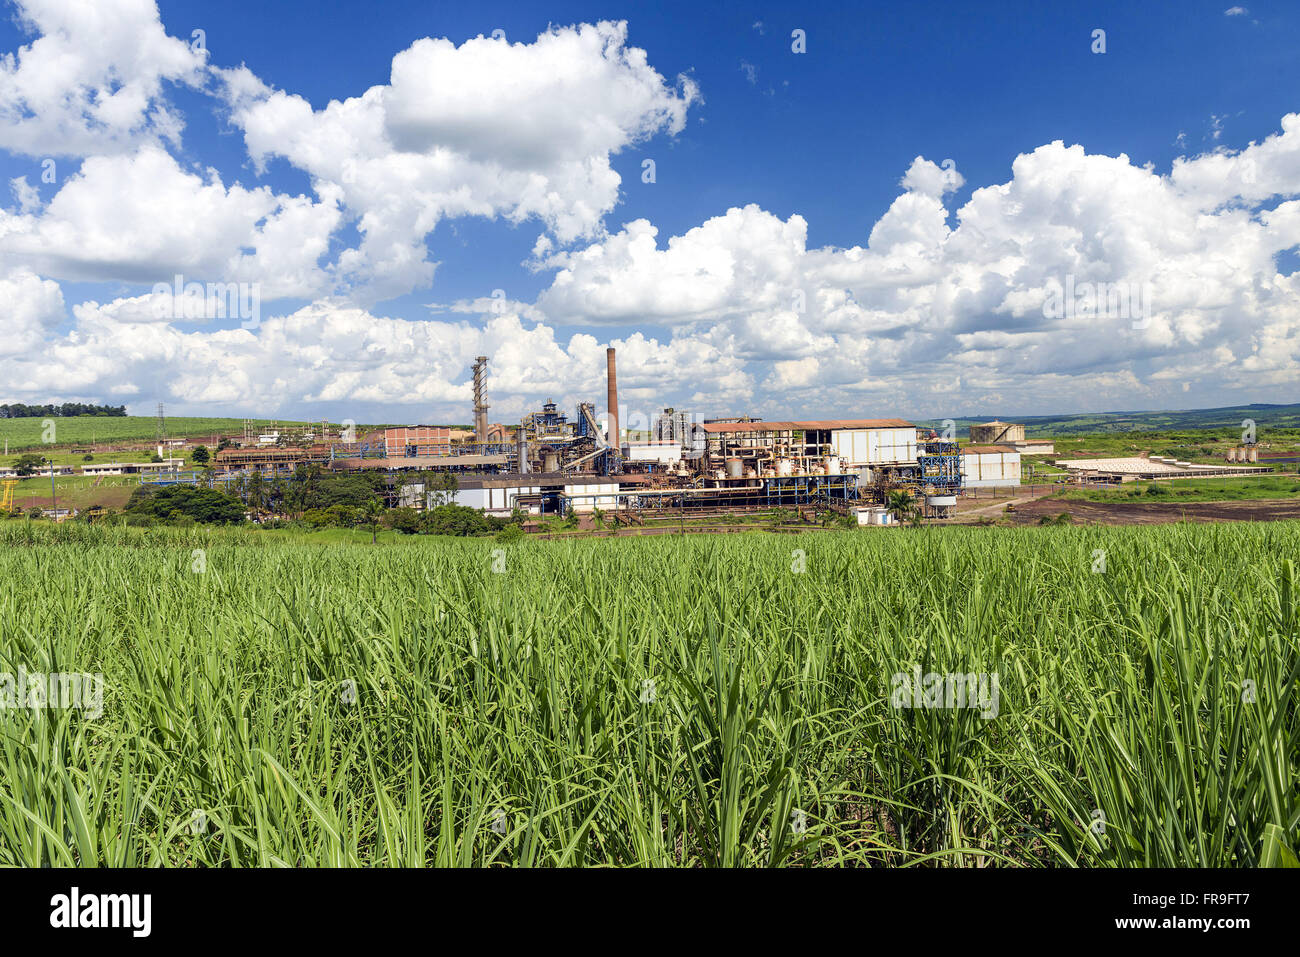 La piantagione di canna da zucchero con impianto di alcool in background Foto Stock